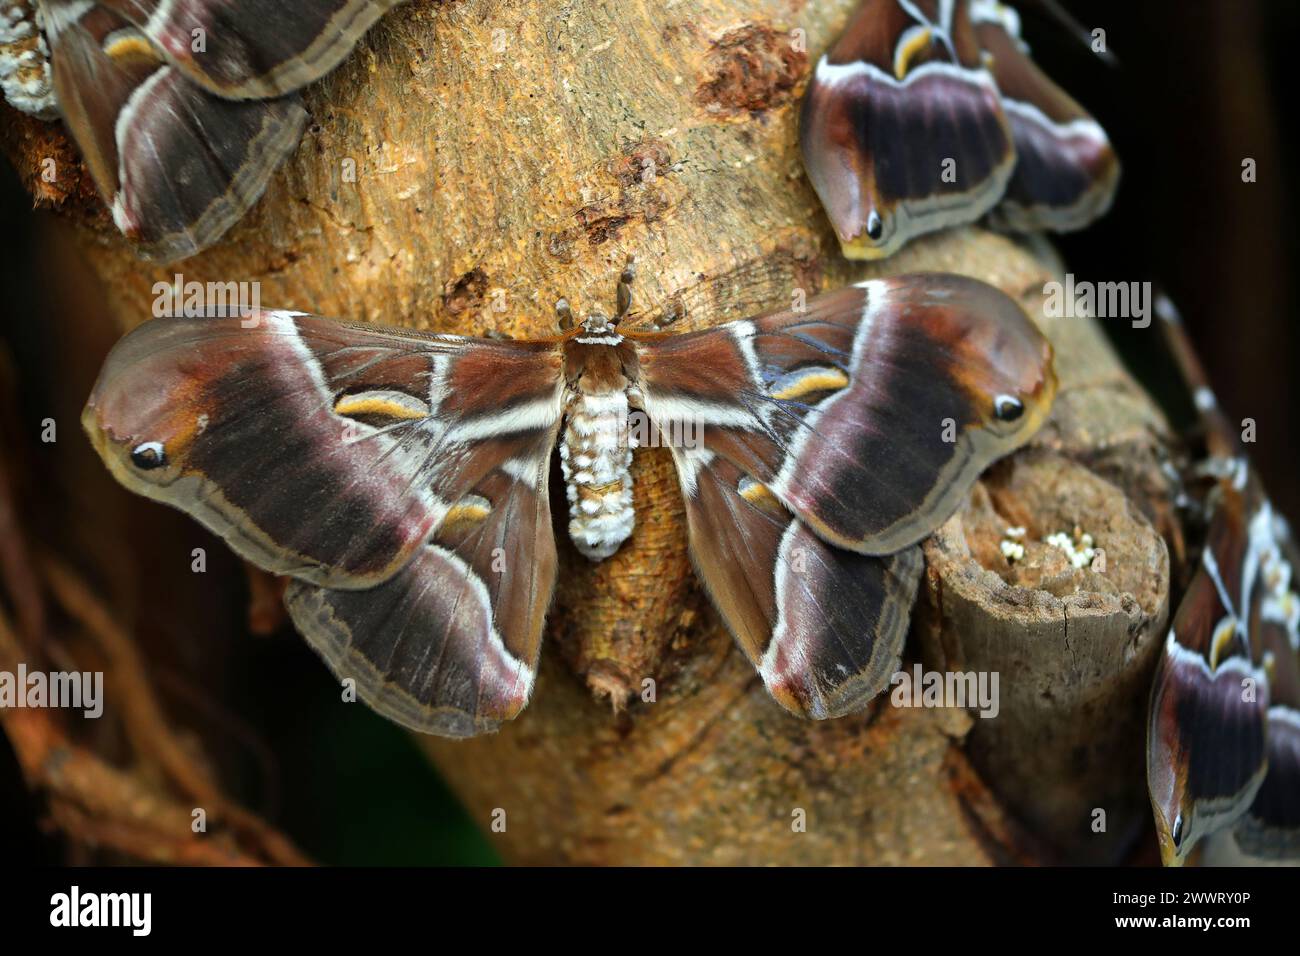 Indian Eri Silkmoths, Samia ricini, Saturniidae, Lepidoptera. India. Syn. Philosamia ricini. Female. Stock Photo